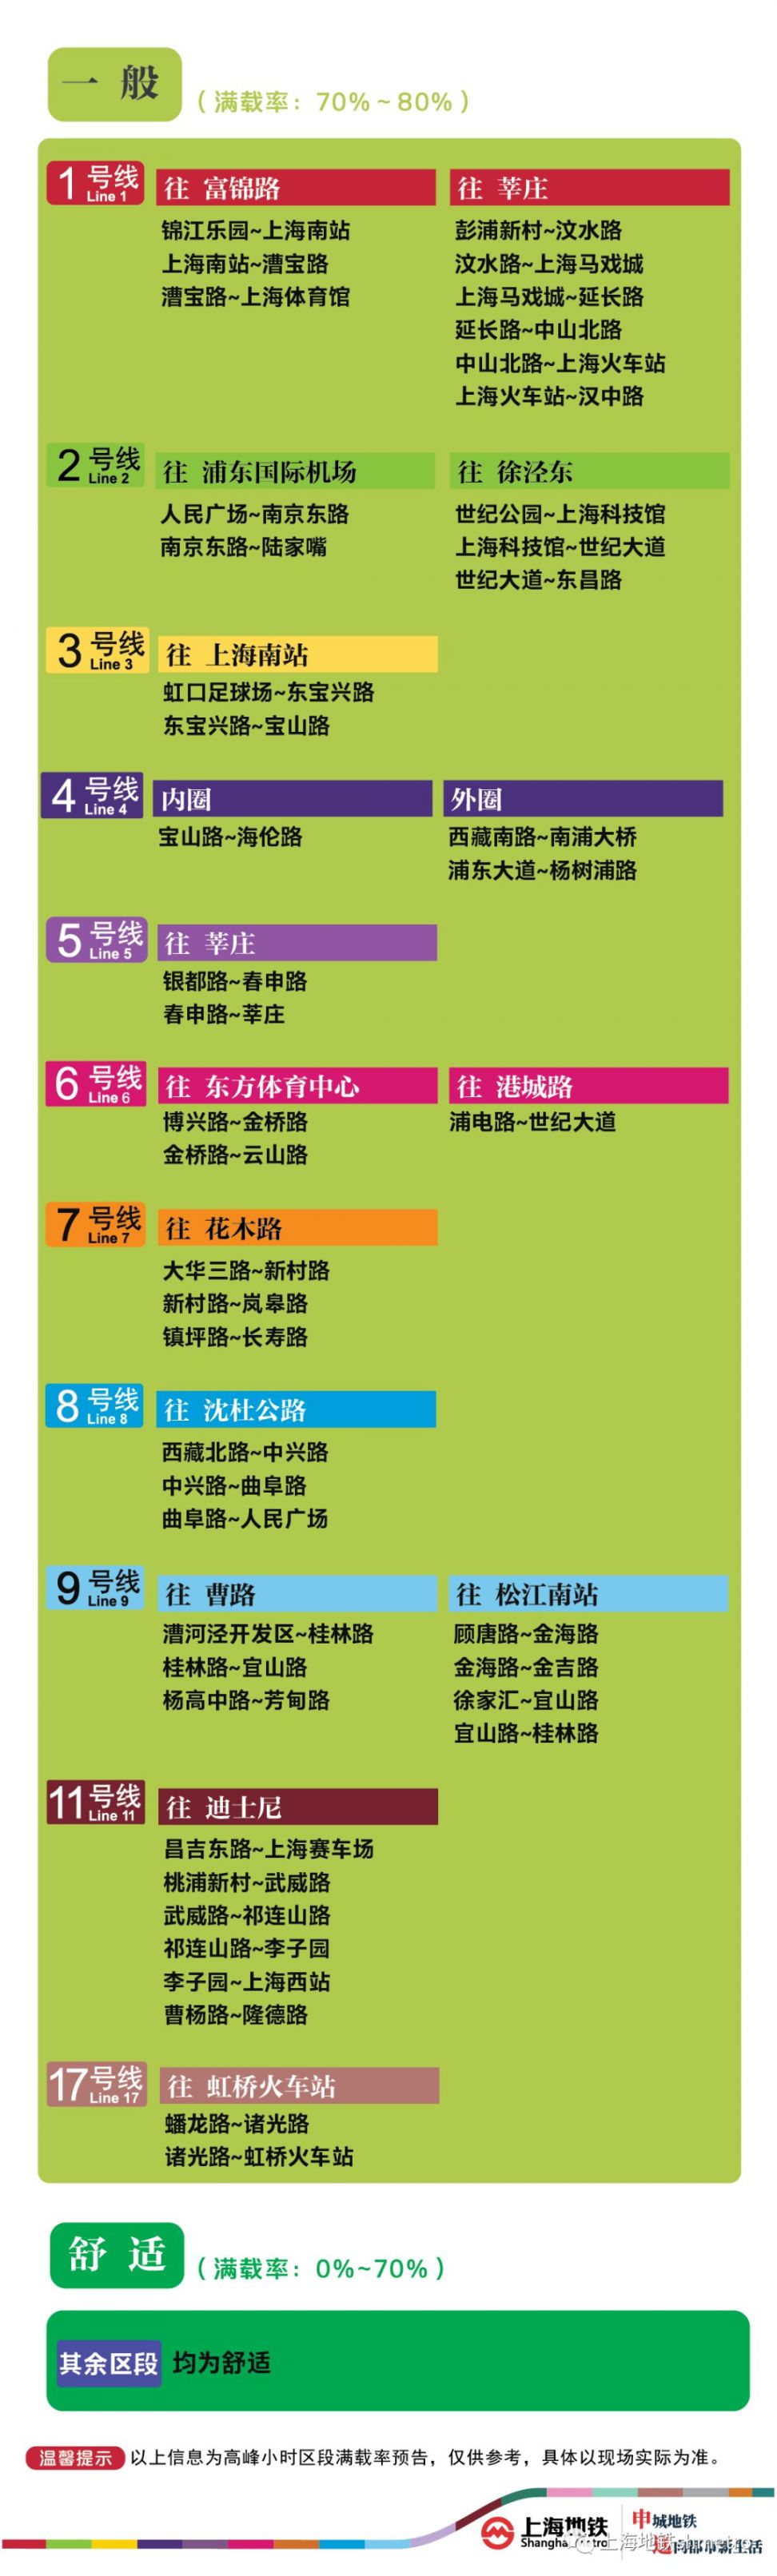 10月23日上海8座地铁站早高峰限流(附舒适度)